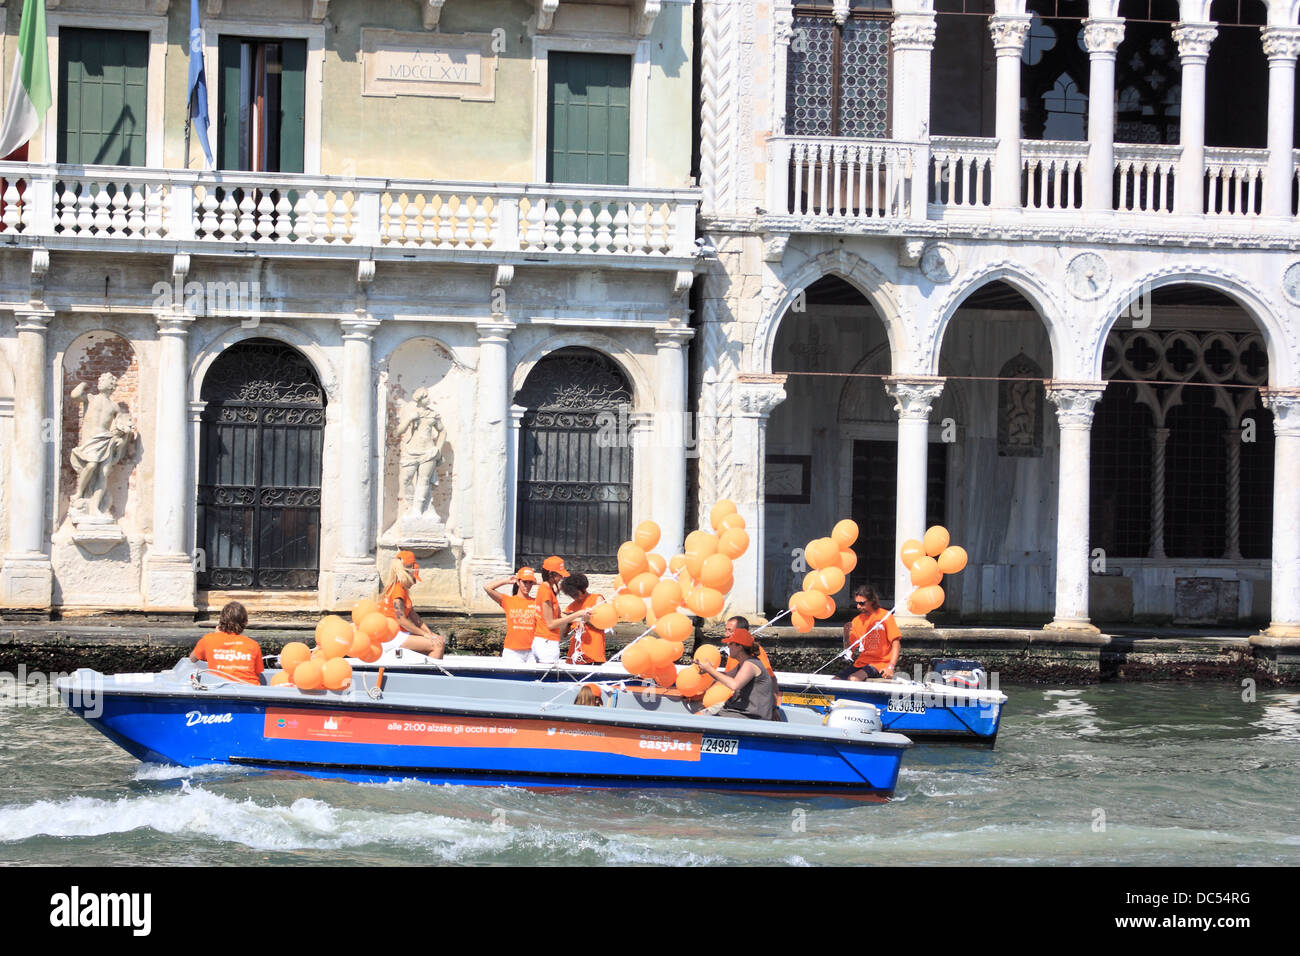 EasyJet campaña publicitaria en Venecia: "Alle 21:00 alzate gli occhi al cielo' #vogliovolare Foto de stock